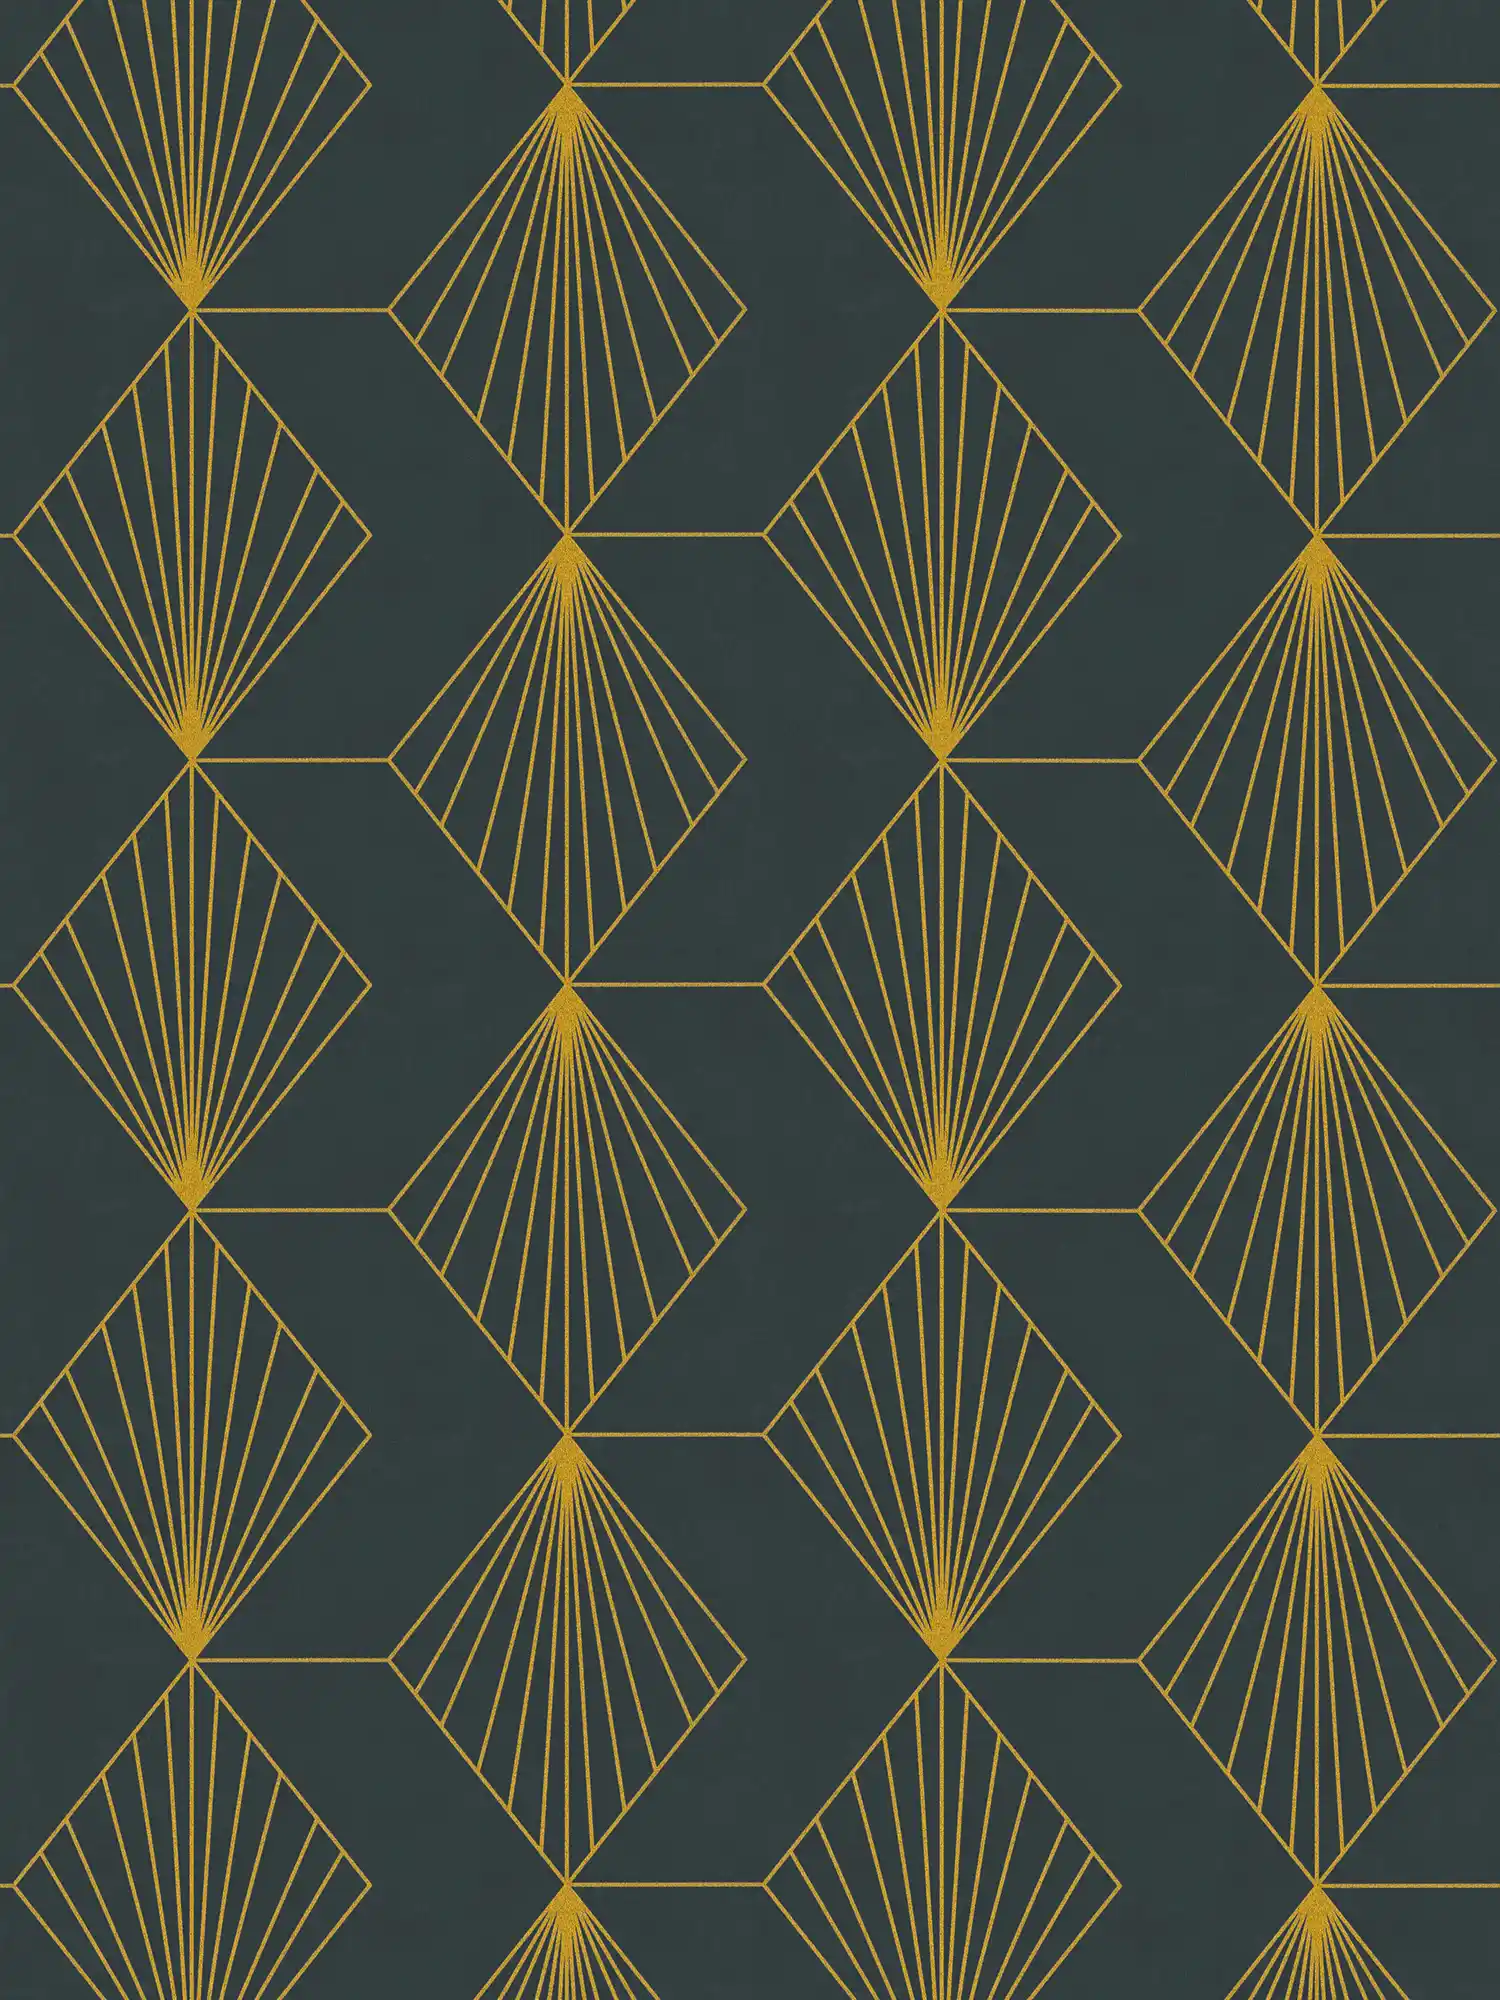         Art Deco vliesbehang met glamoureus patroon - zwart, goud
    